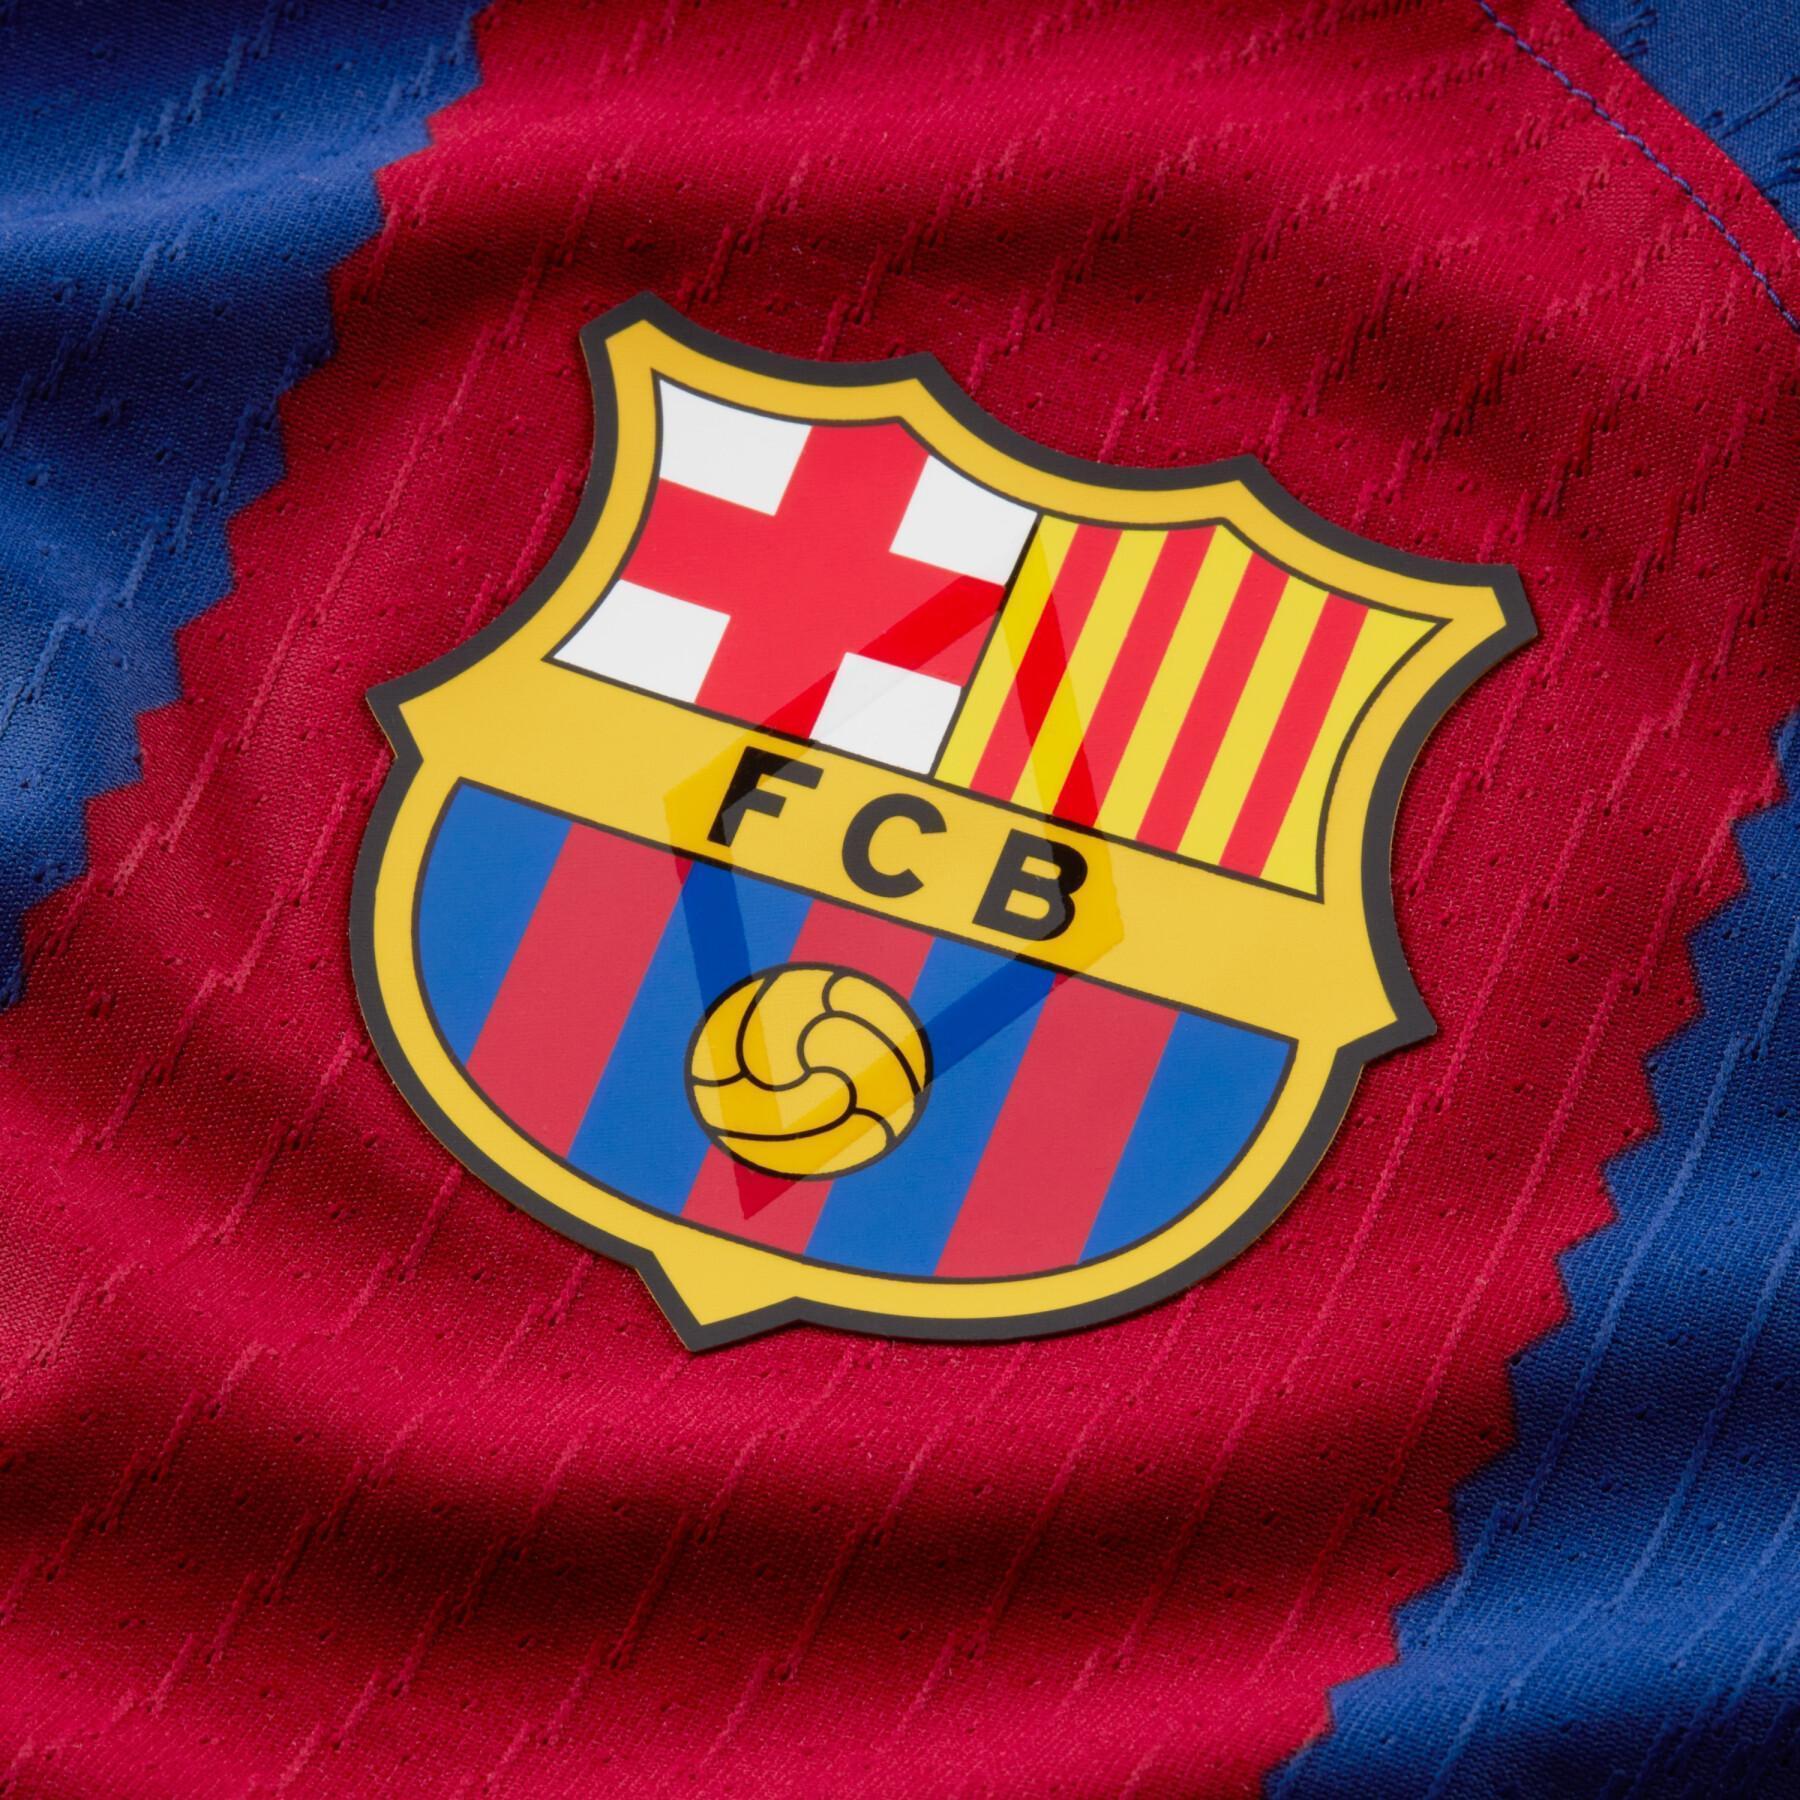 Authentisches Heimtrikot FC Barcelone 2023/24